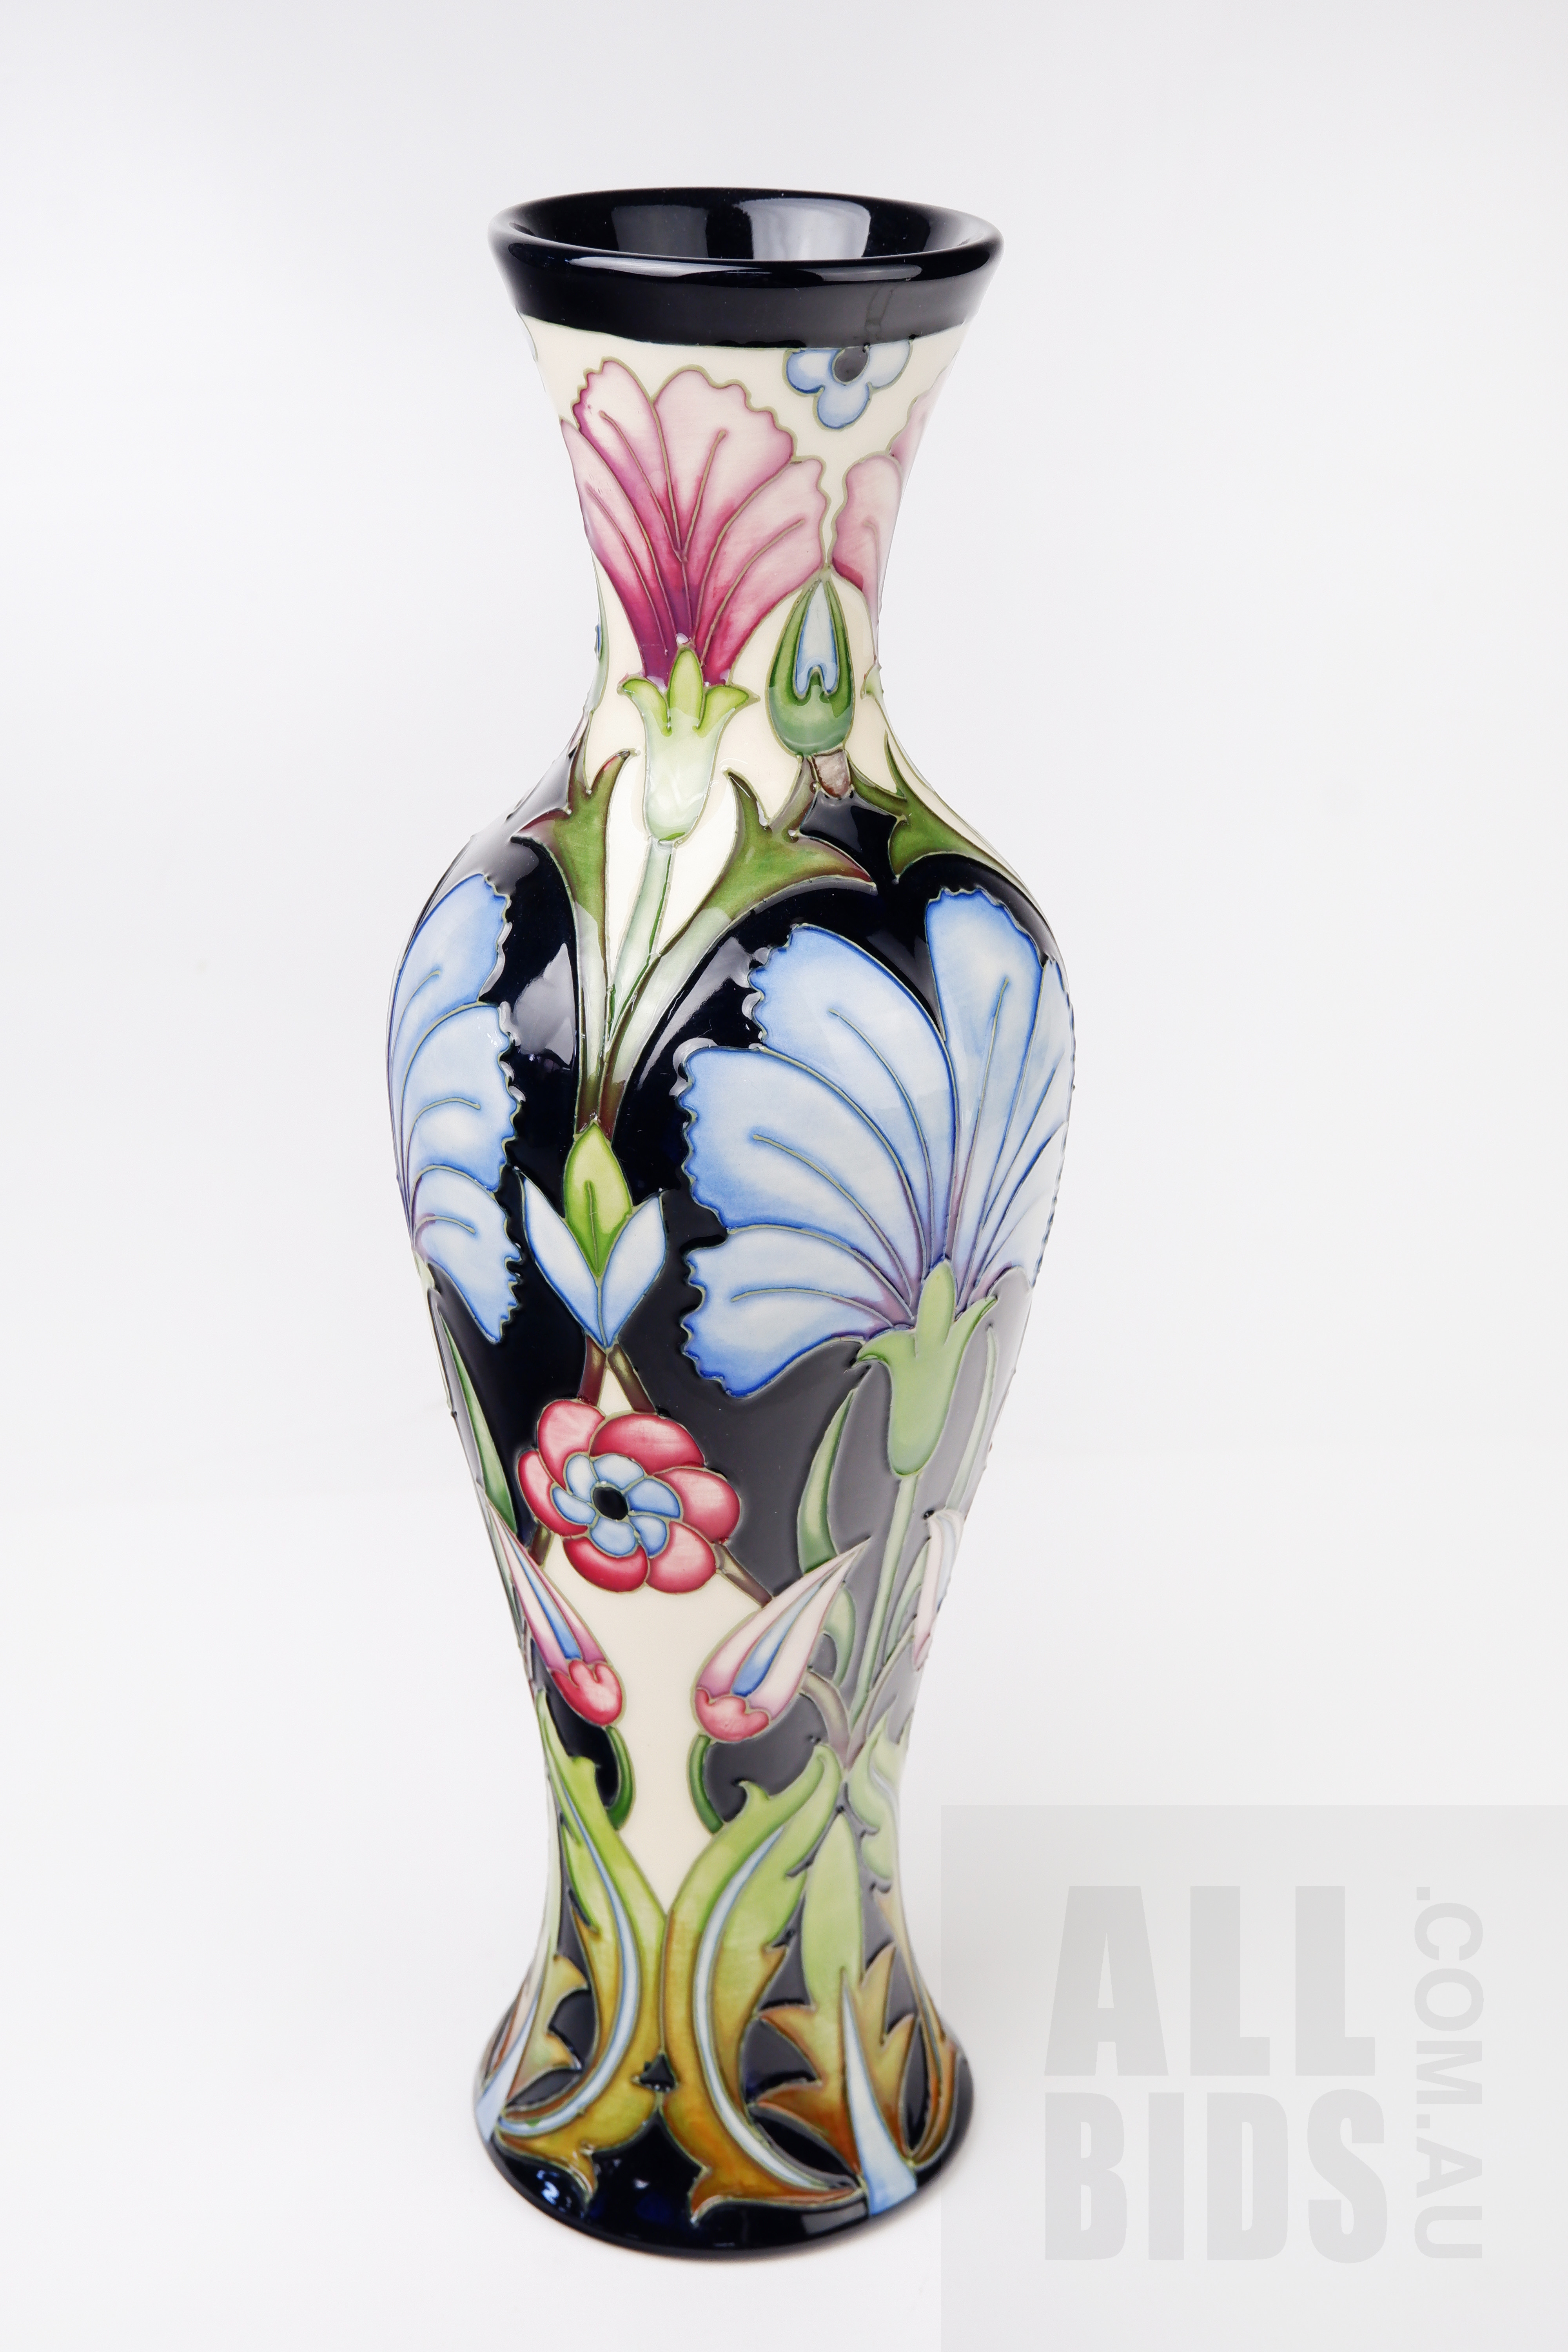 ' Moorcroft Rachel Bishop Casablanca Vase 2009'